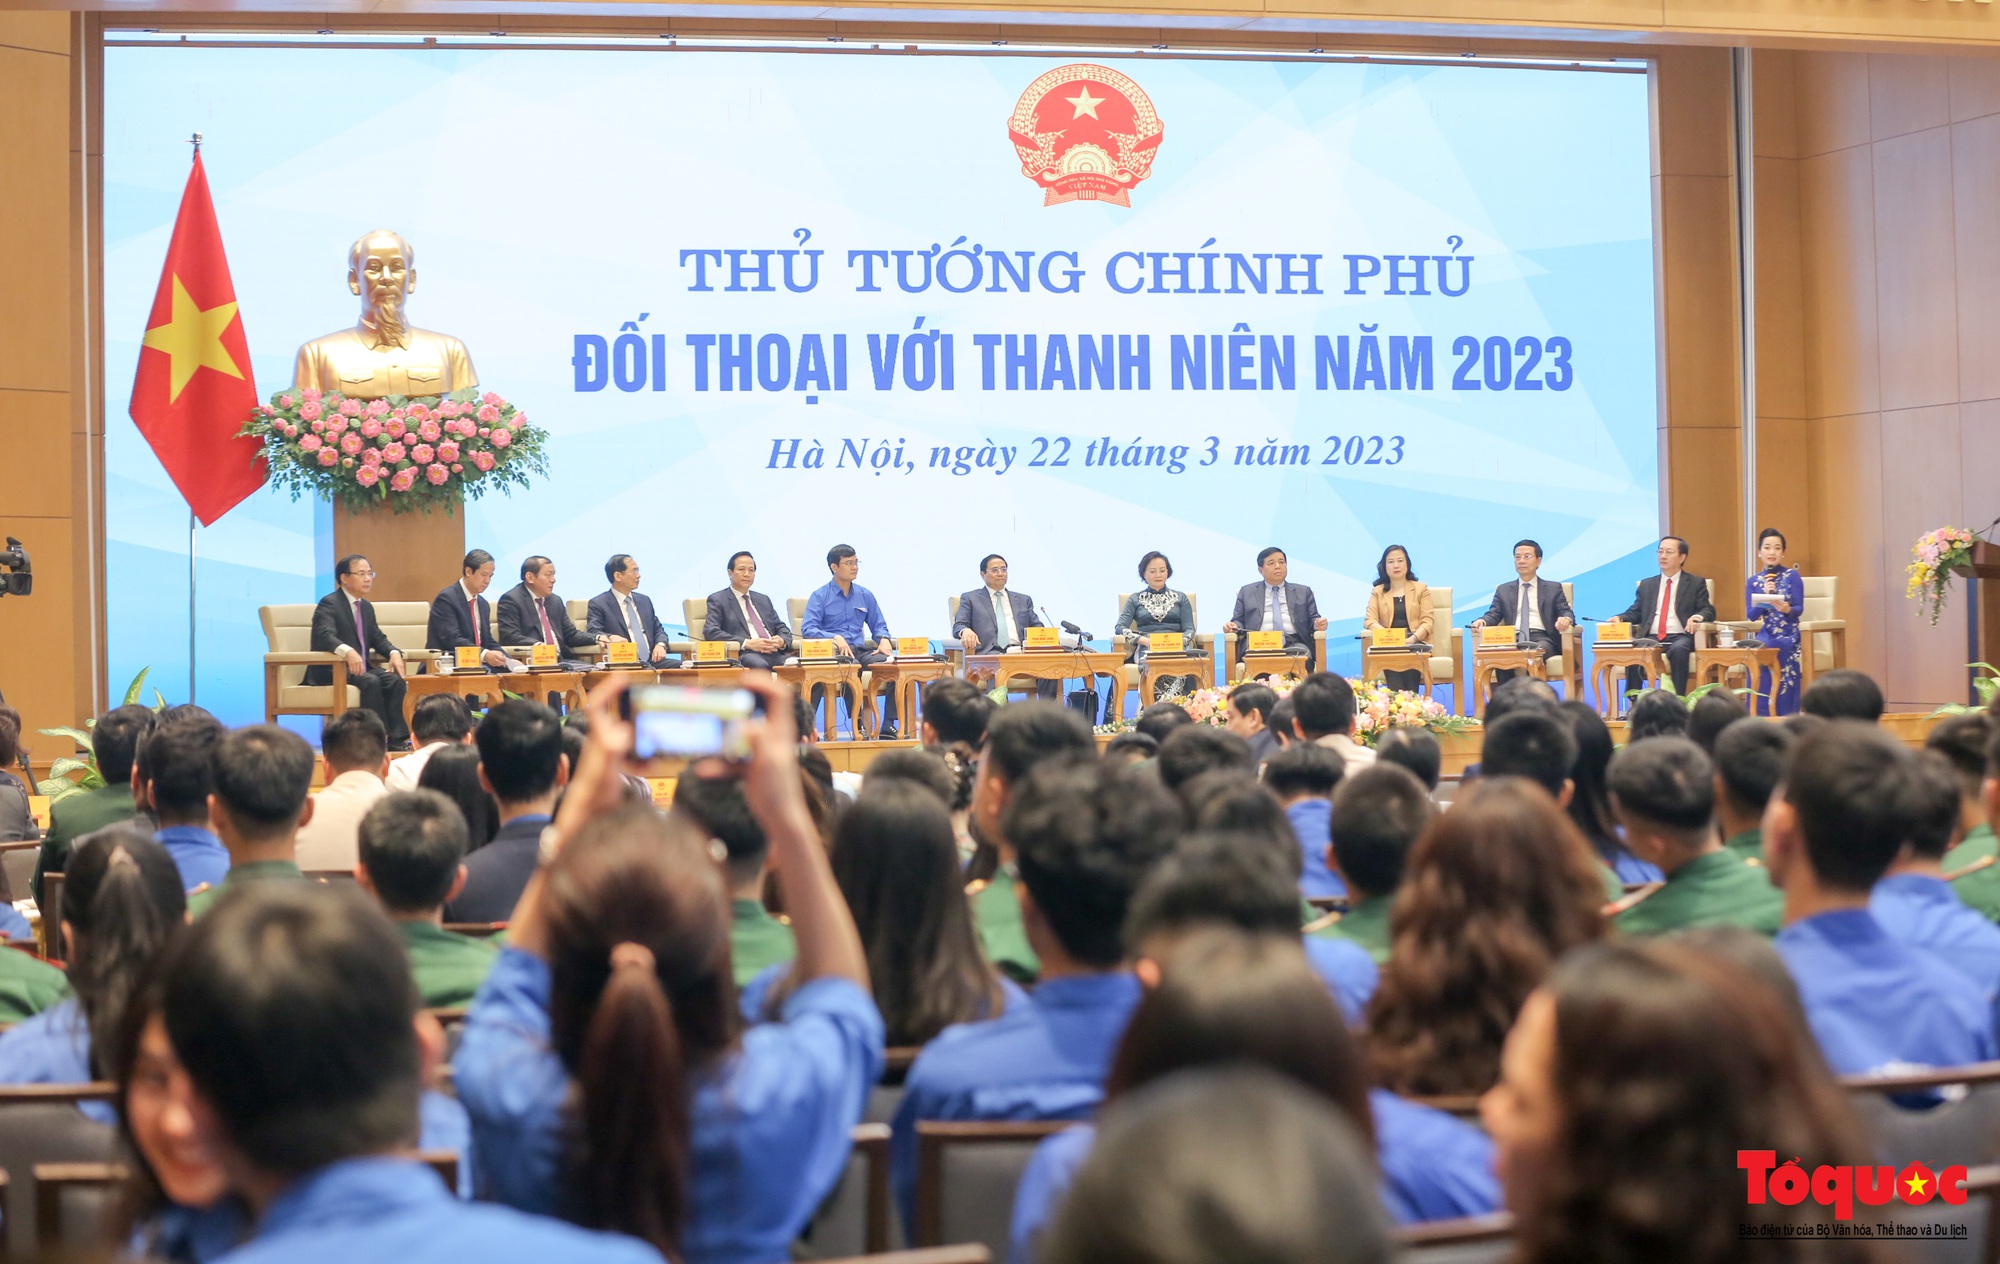 Chùm ảnh: Thủ tướng Chính phủ Phạm Minh Chính đối thoại với thanh niên Việt Nam - Ảnh 1.